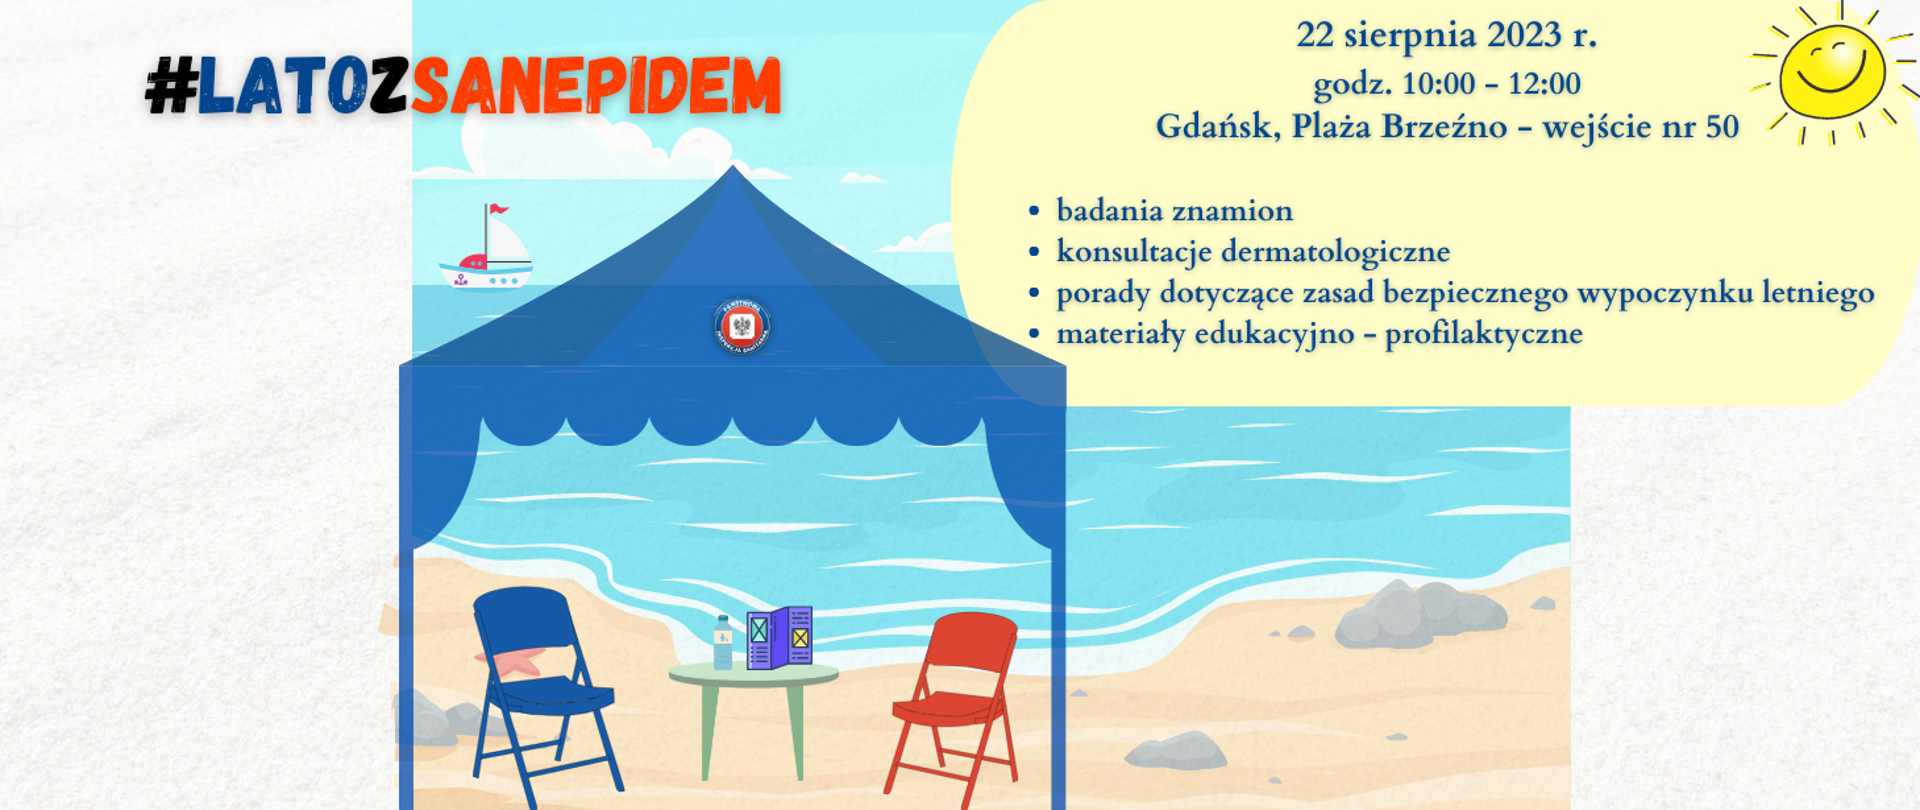 Zdjęcie przedstawia baner informujący o akcji #latozsanepidem na Plazy w Brzeźnie, 22 sierpnia 2023 r. Na zdjęciu widać morze i plażę, w lewym dolnym rogu znajduje się namiot i dwa krzesełka.